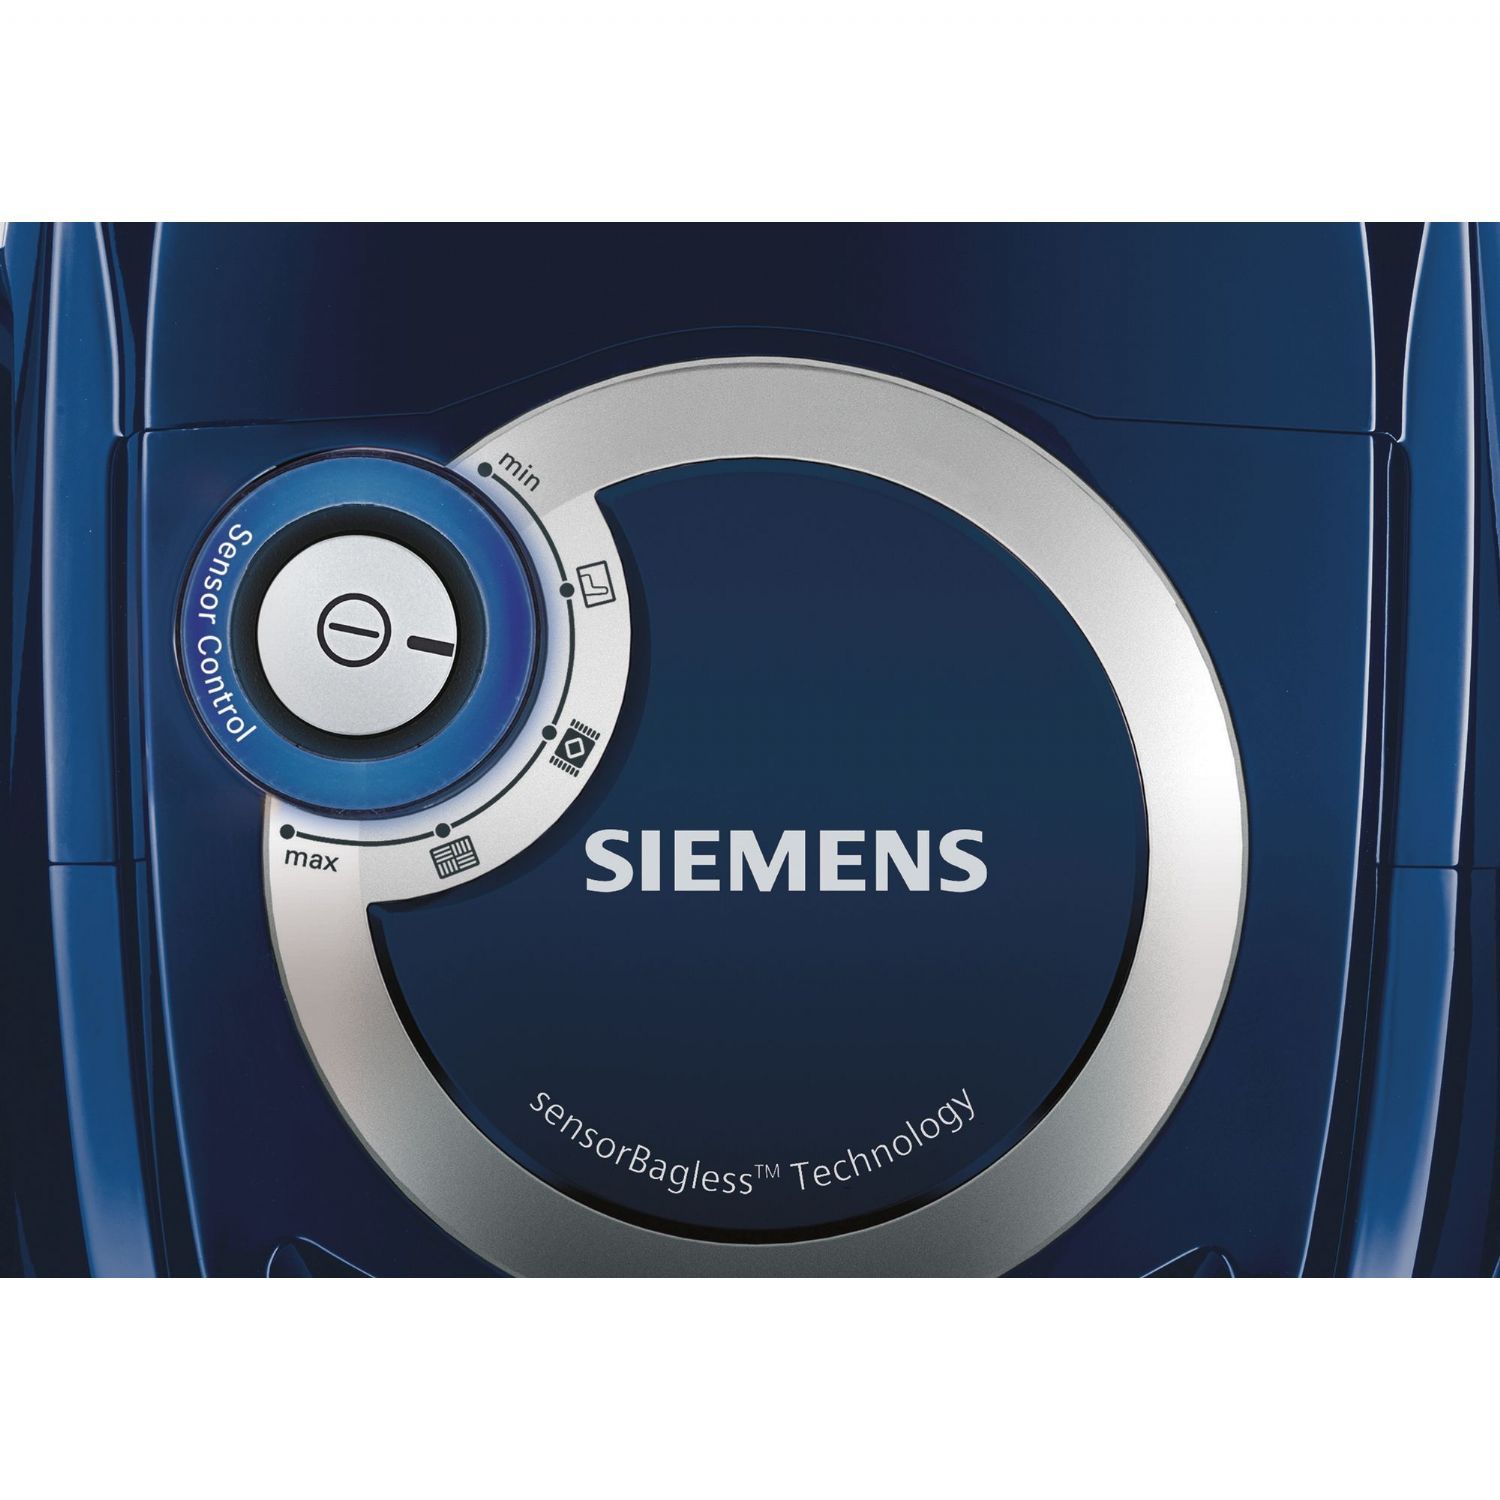 Elektrikli Süpürgeler | Siemens VSX2A230 700 W Toz Torbasız Elektrikli Süpürge - Mavi | VSX2A230 | VSX2A230, Siemens VSX2A230 | 